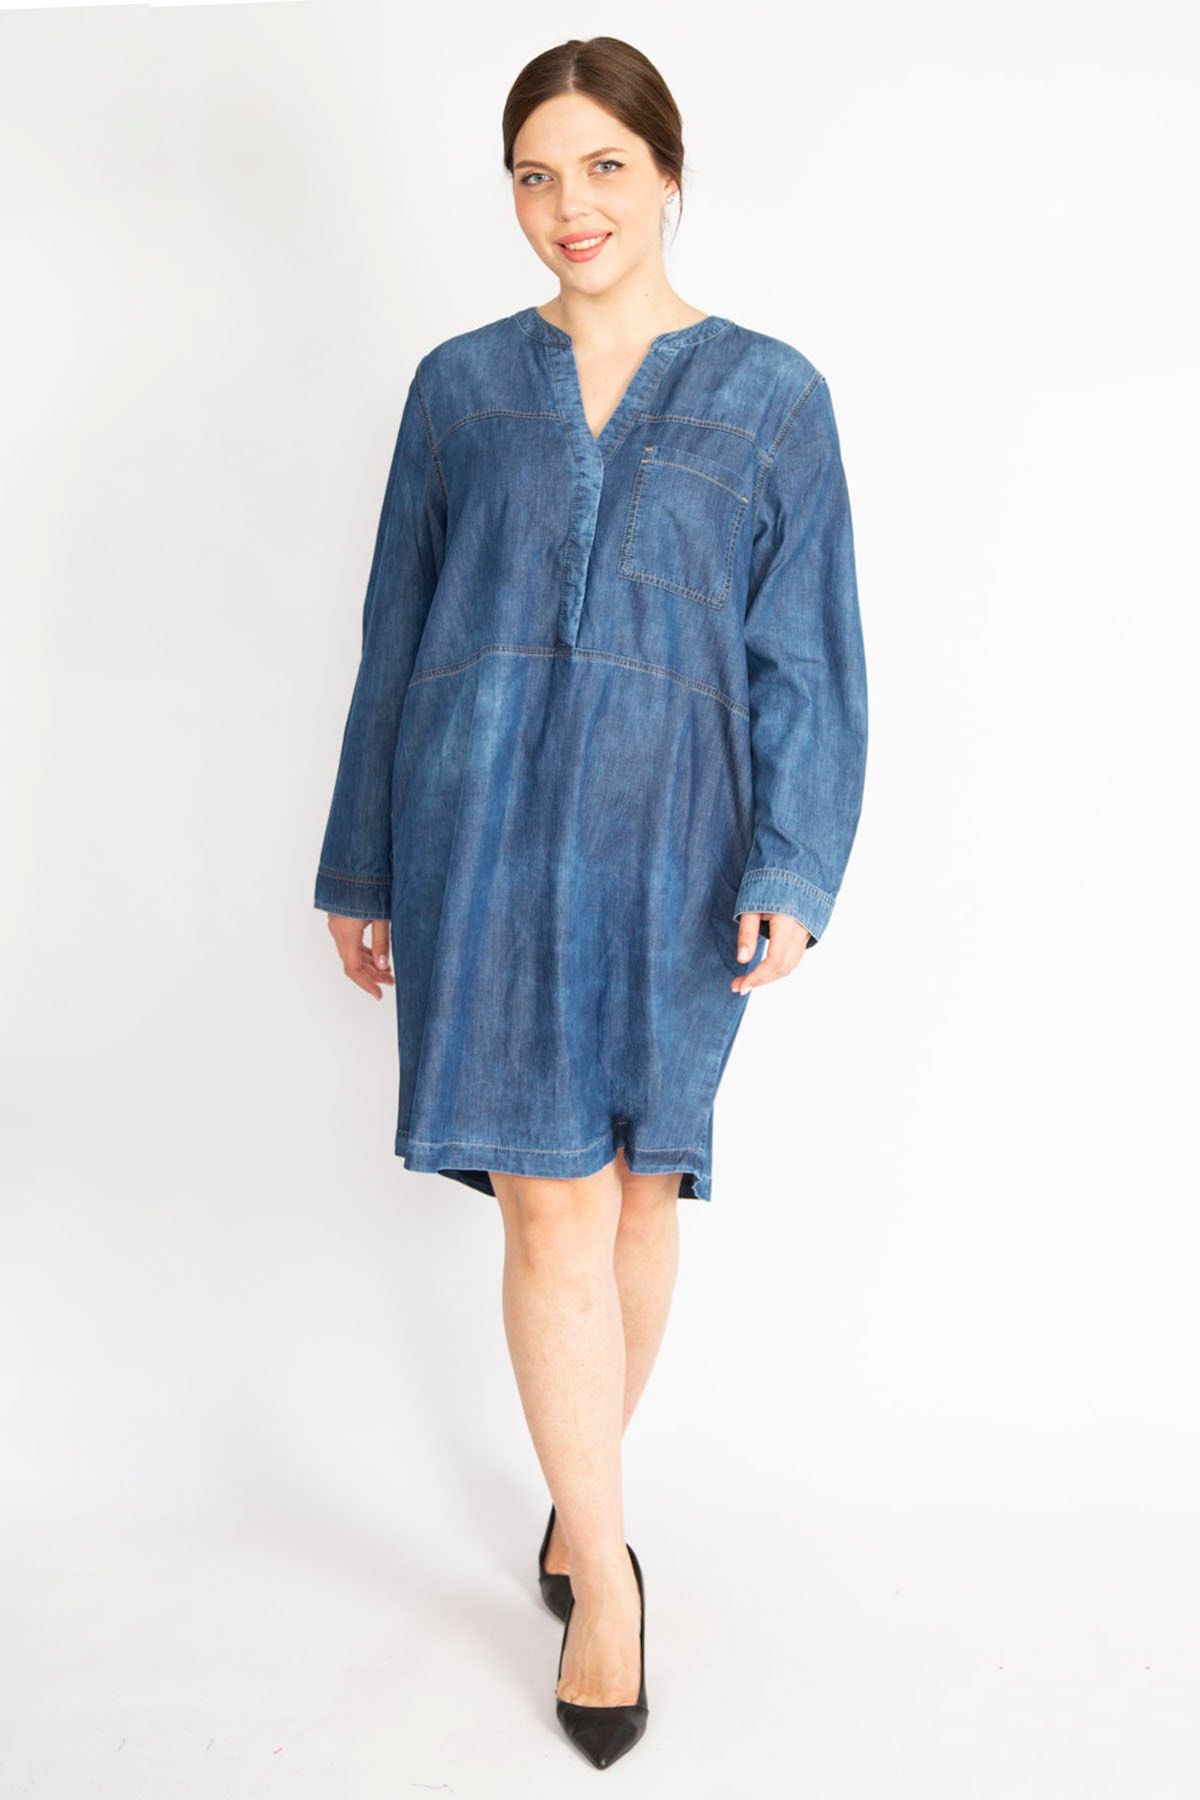 Şans Kadın Lacivert Büyük Beden Yıkama Efektli Ön Patı Çıtçıt Düğmeli Kot Elbise 65n36397